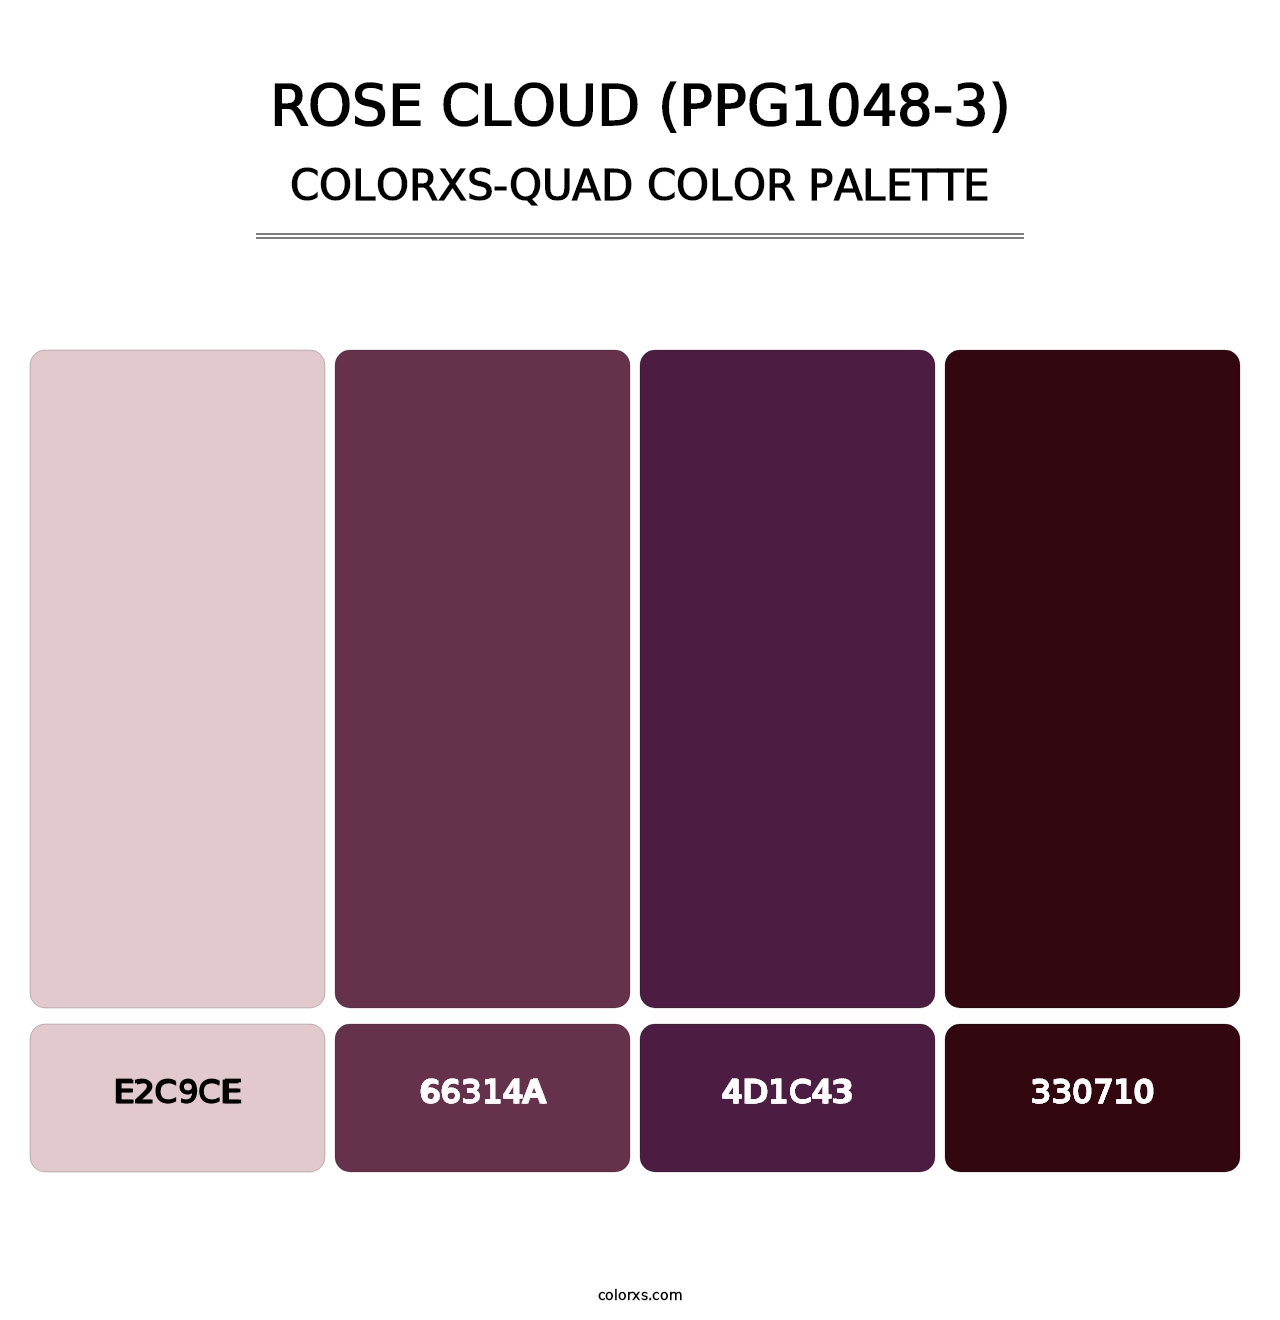 Rose Cloud (PPG1048-3) - Colorxs Quad Palette